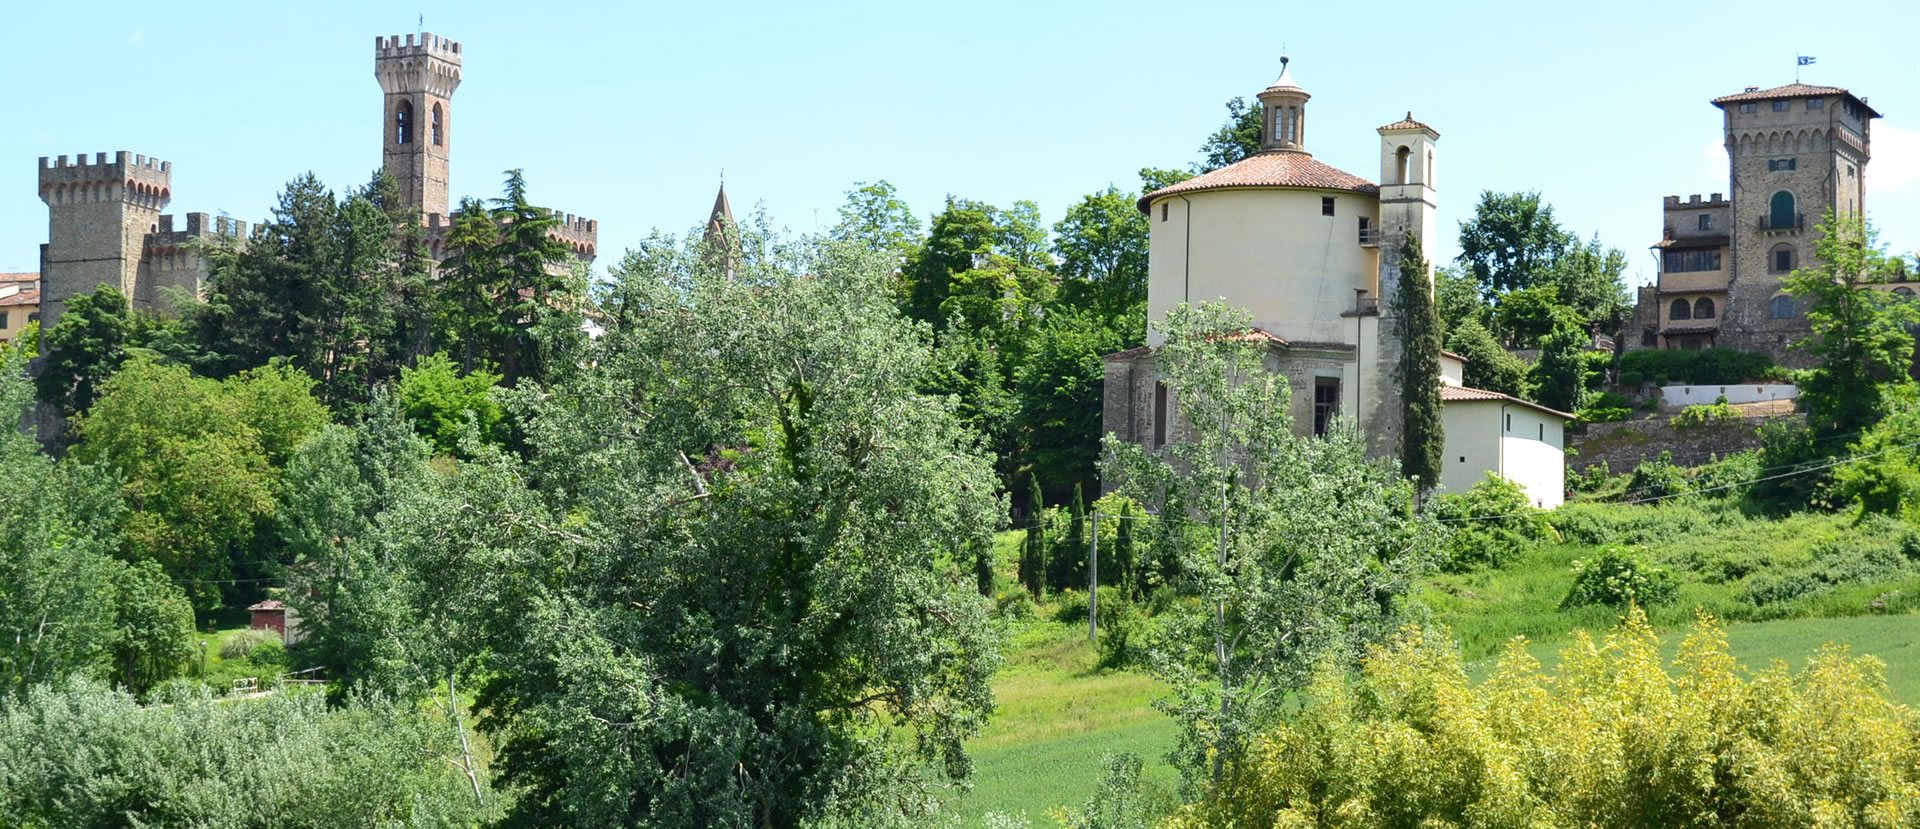 Verkauf von Immobilien Toskana